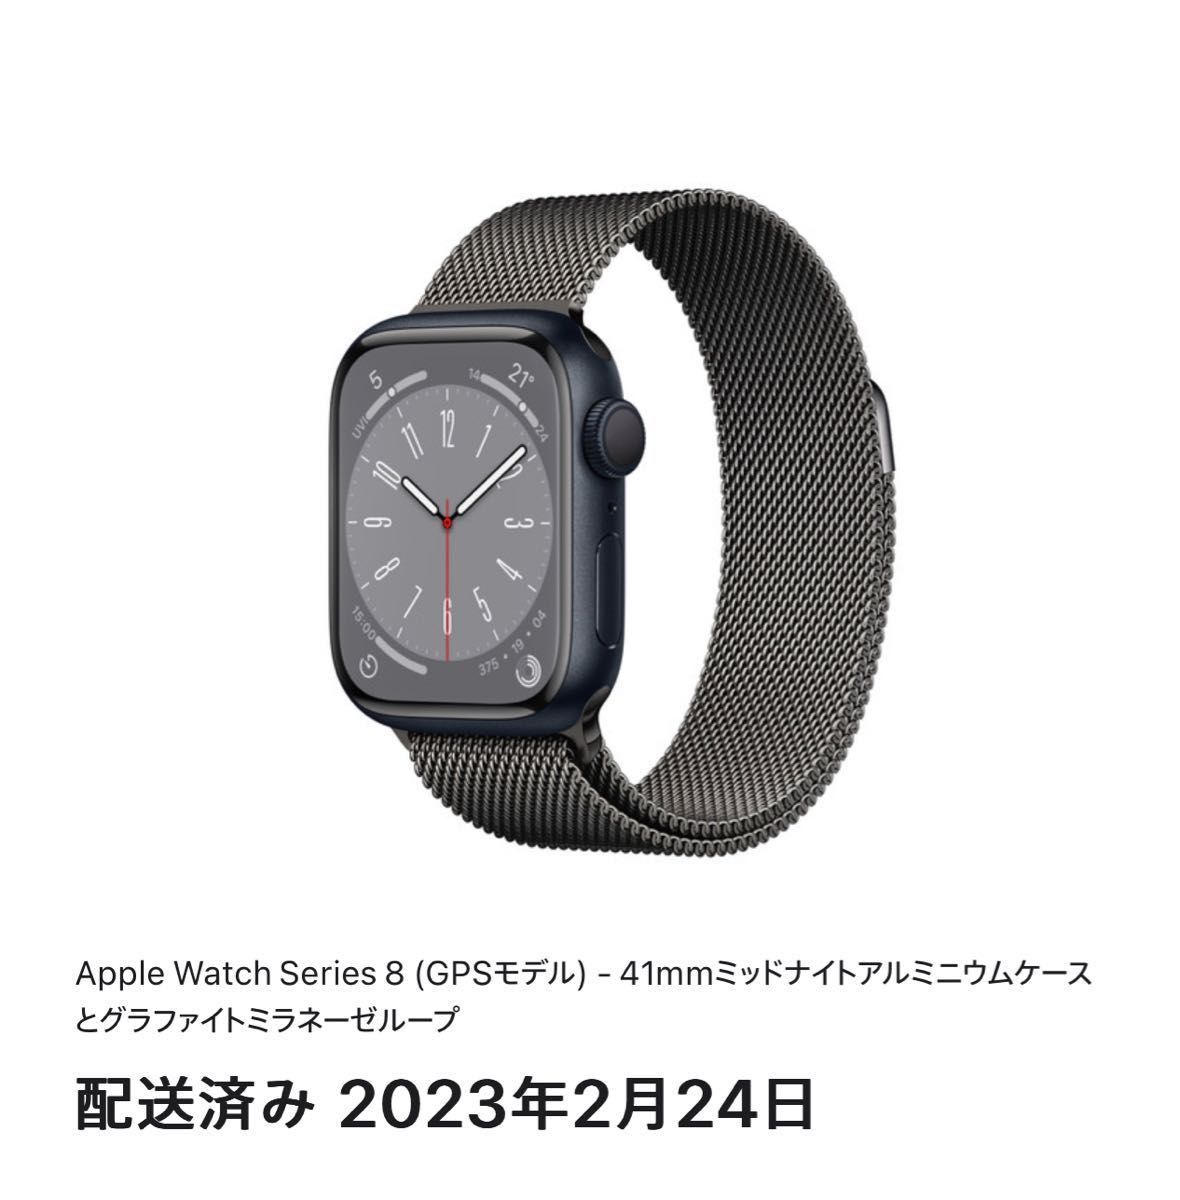 Apple Watch Series 8 (GPSモデル) -41mmミッドナイトアルミニウム